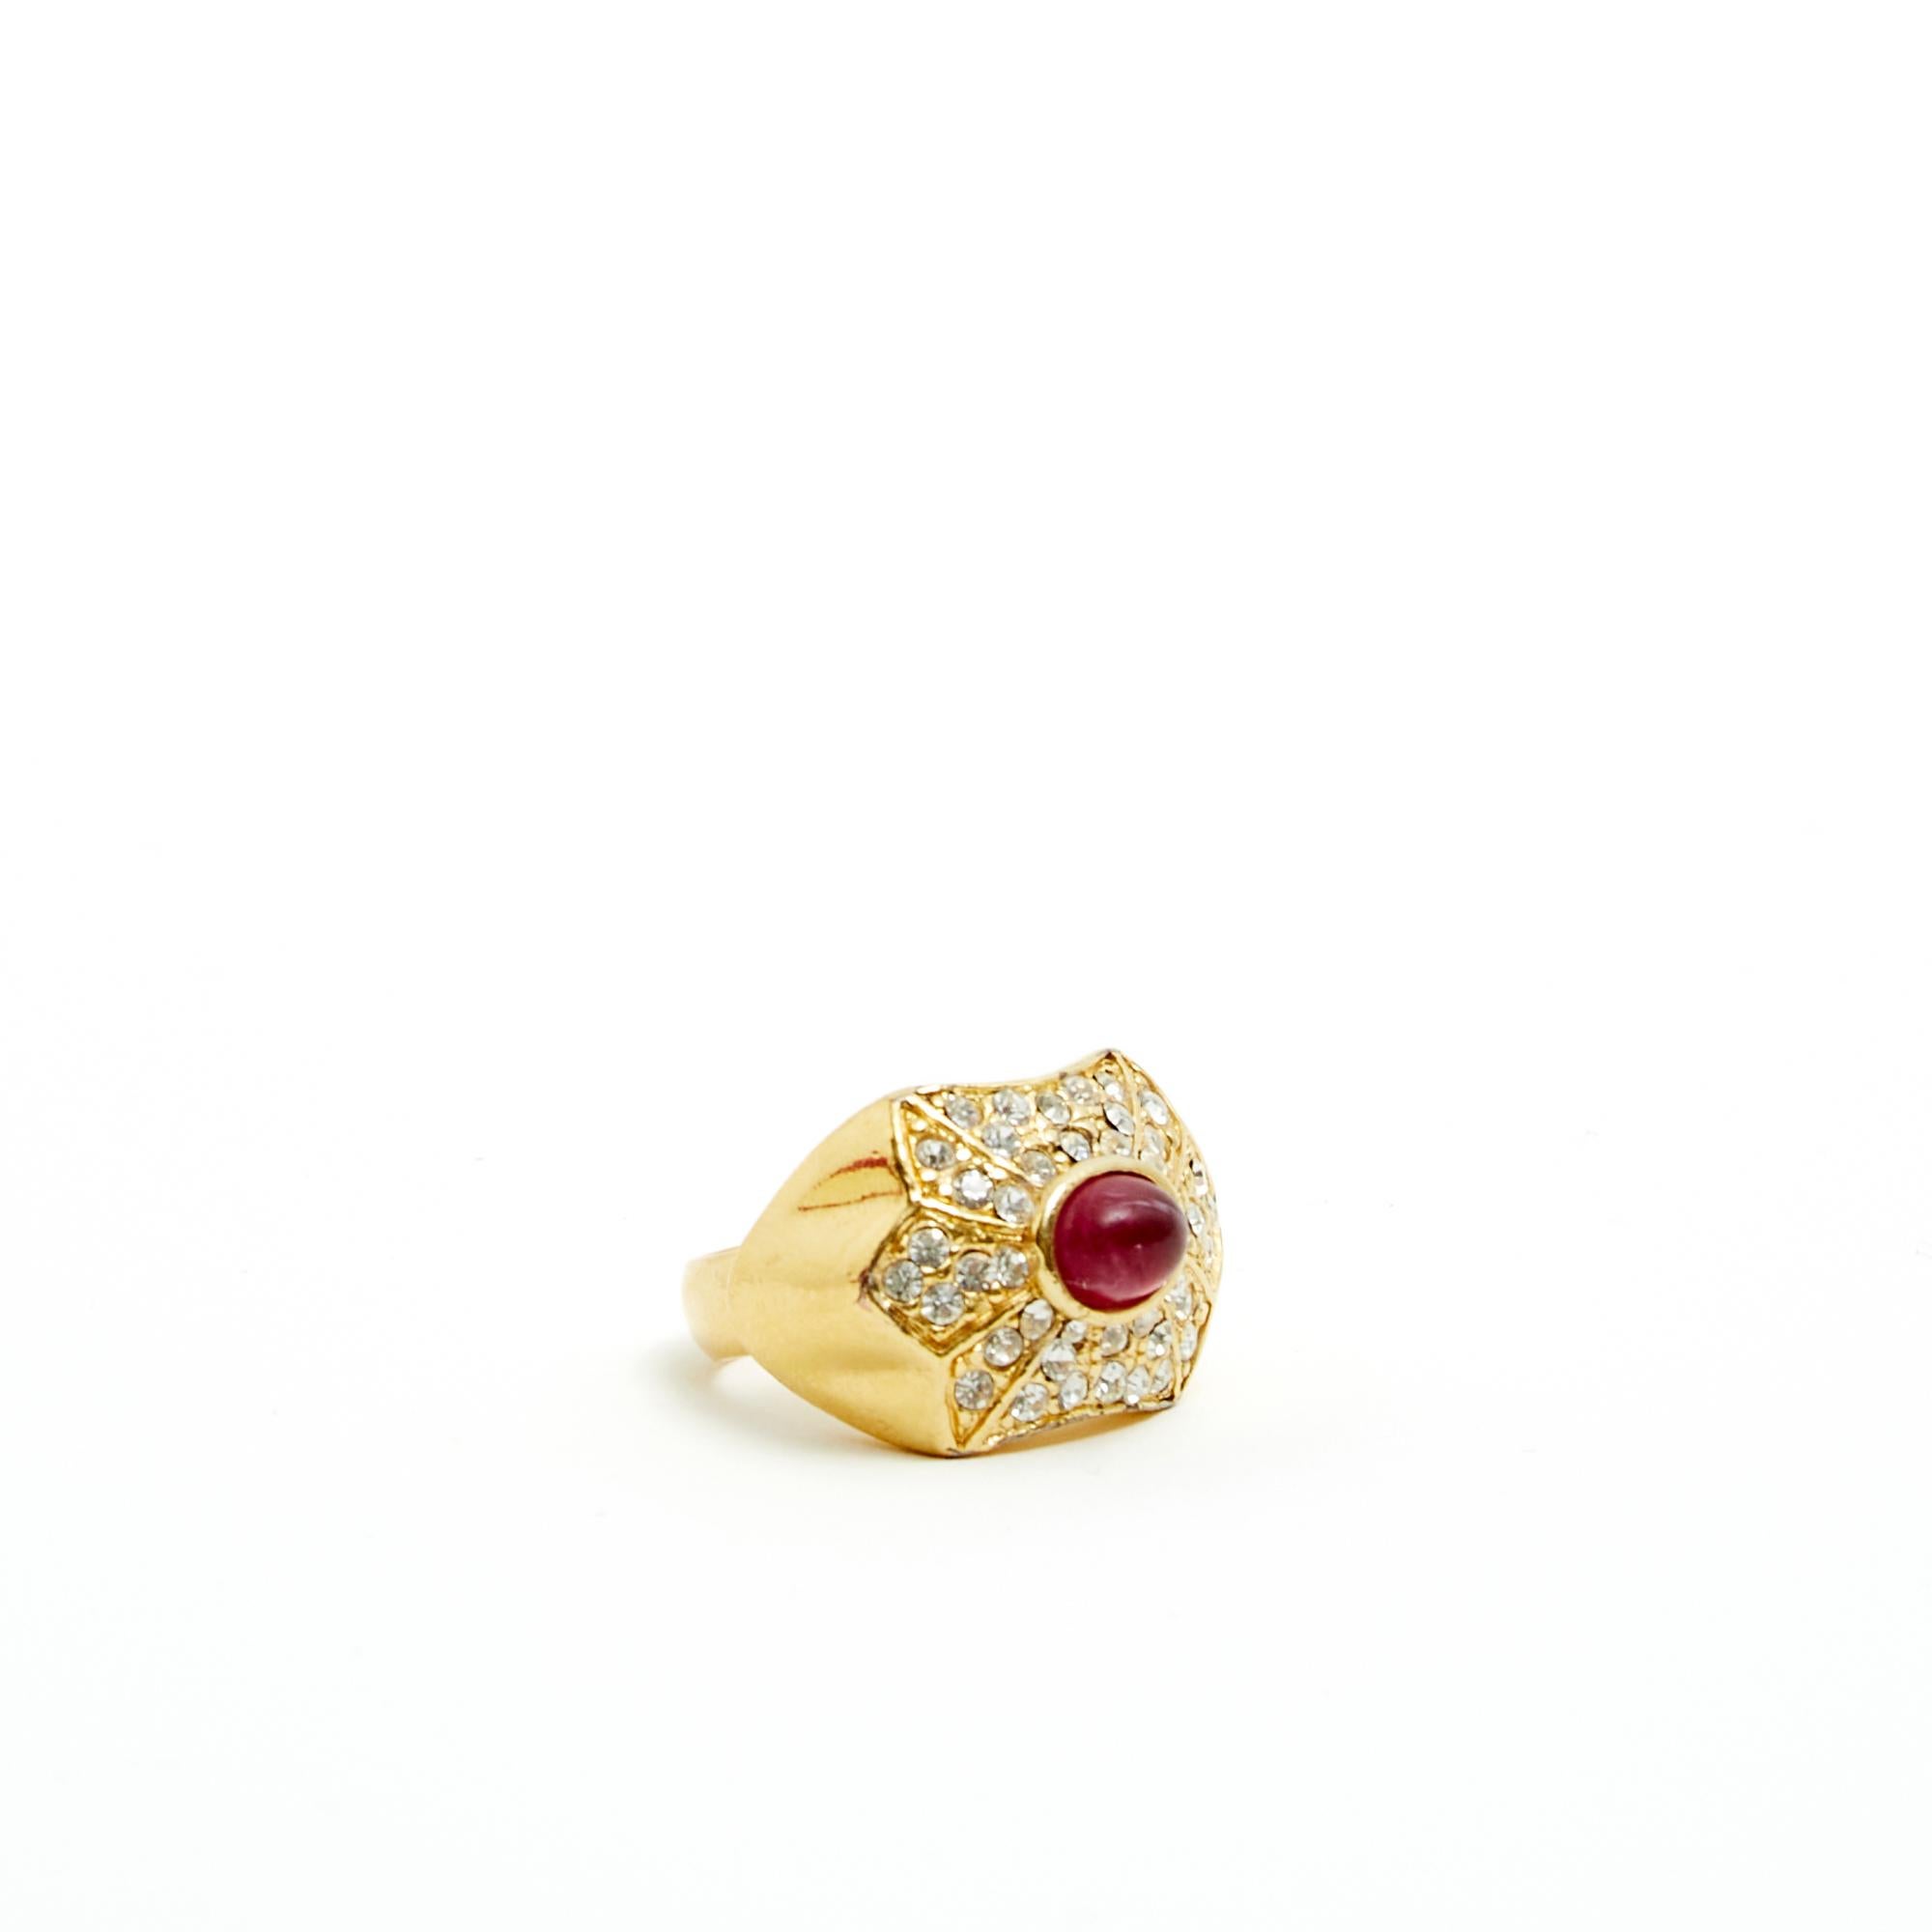 Ring von Christian Dior um 1990 im Art-déco-Stil aus goldenem Metall, besetzt mit Strasssteinen im Brillant-Stil und einem Stein, der einen Rubin imitiert, signiert. Fingergröße (auf Ringmaß) 49 oder US4,75, Innendurchmesser 1,57 cm, Maße des